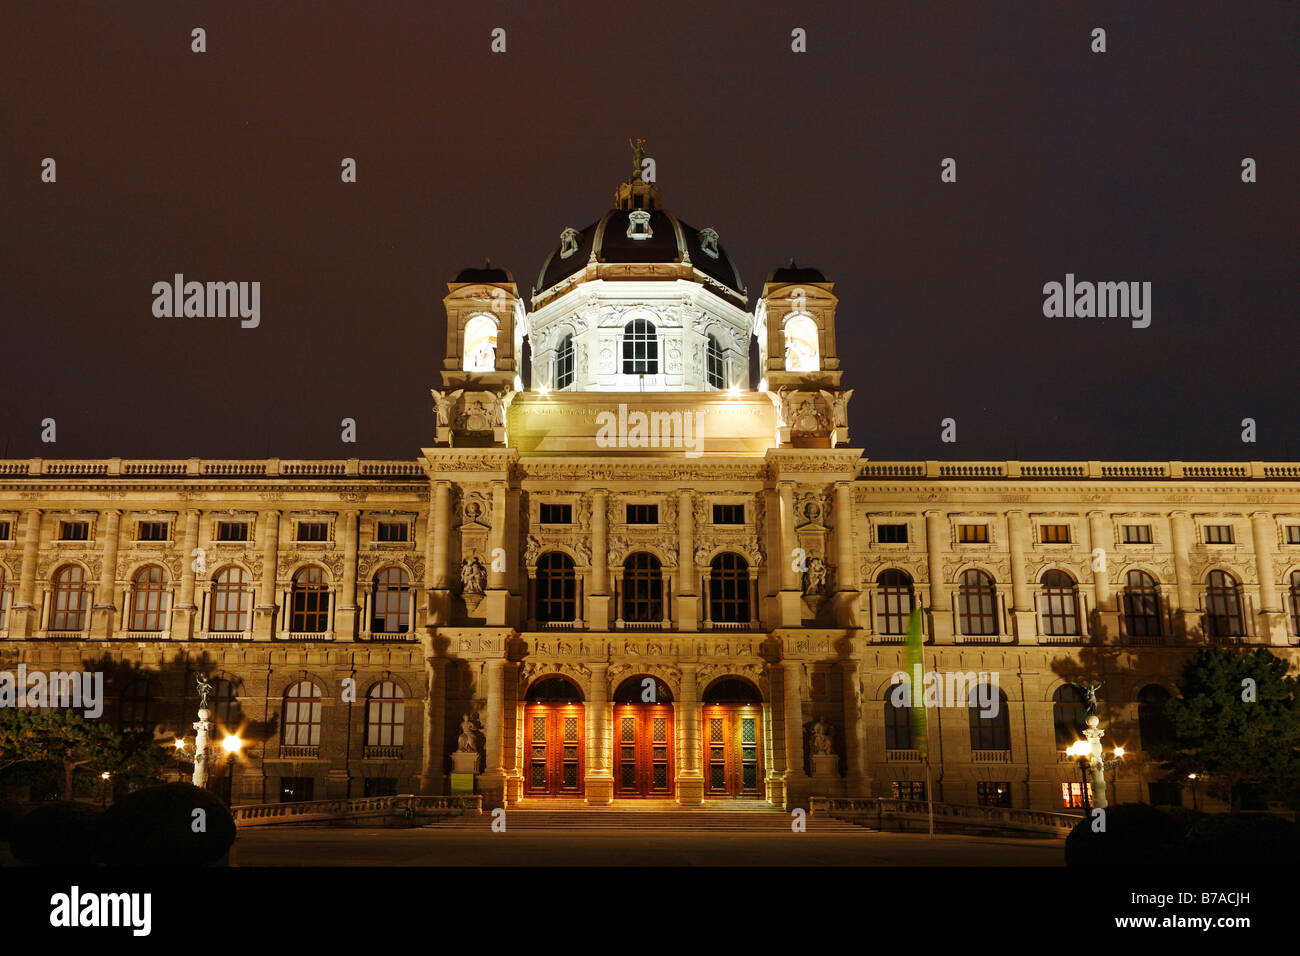 Kunsthistorisches Museum, Kunsthistorisches Museum, Maria-Theresien-Platz, Wien, Austria, Europe Stockfoto